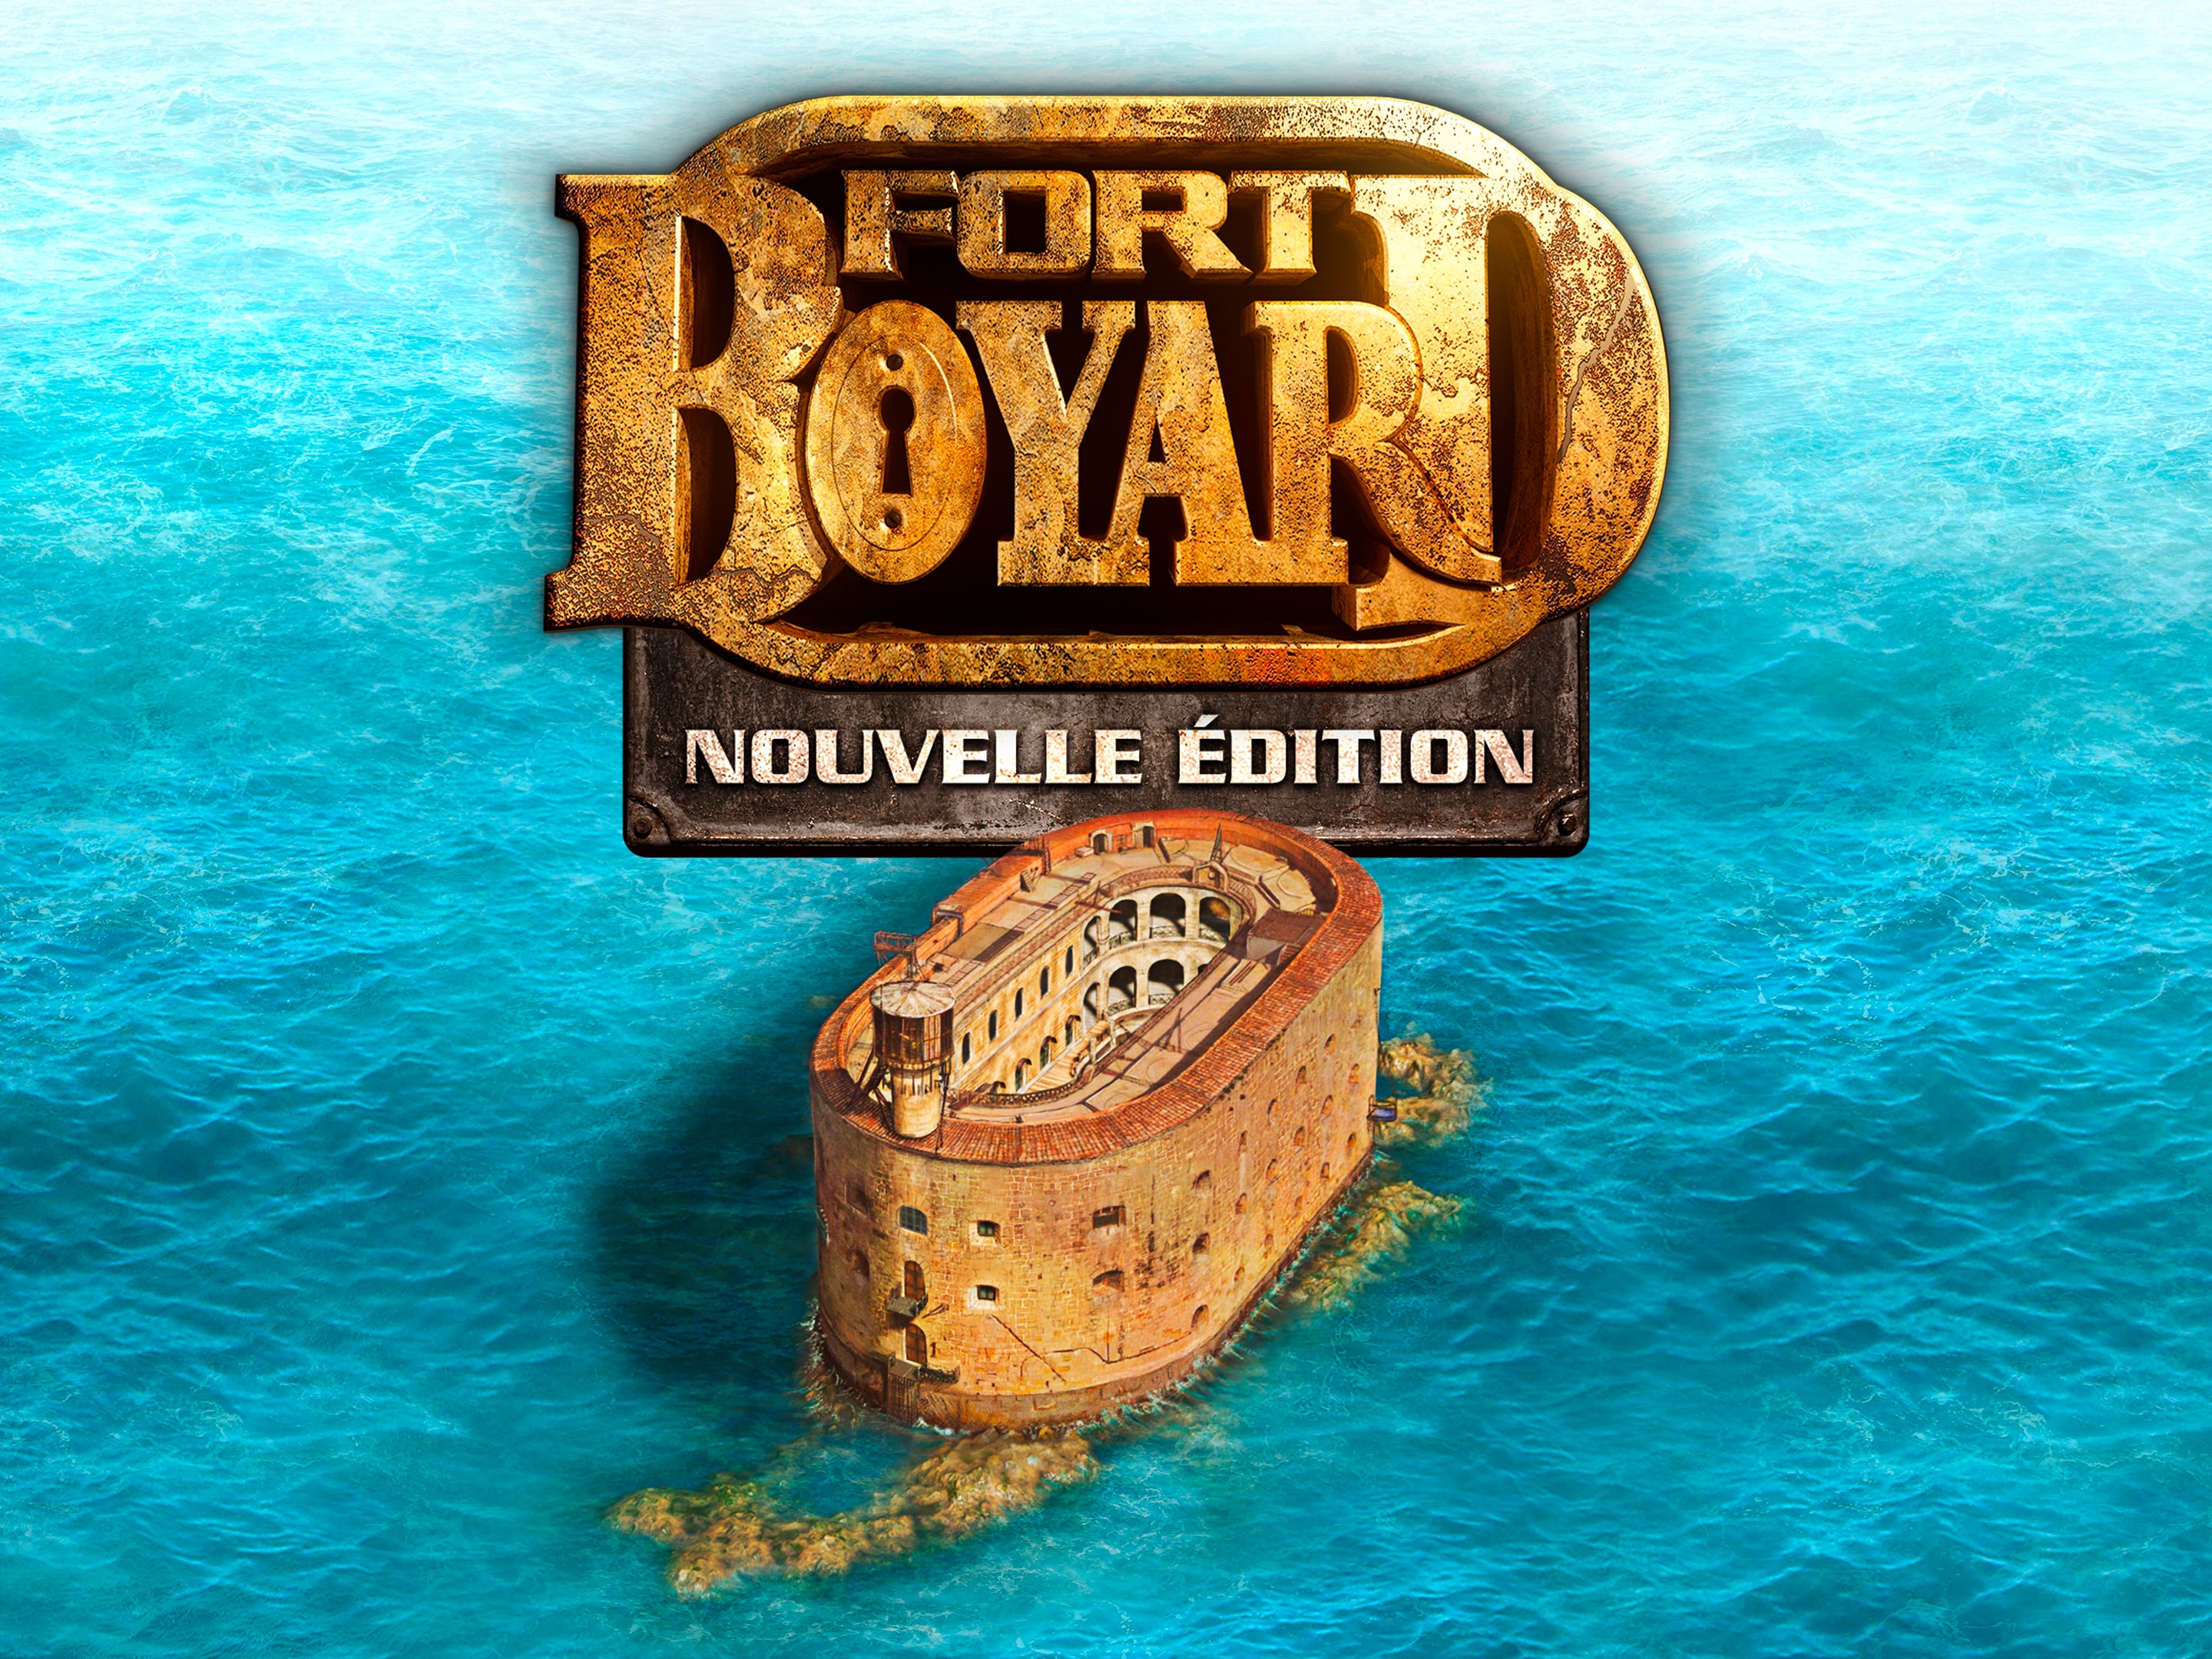 Fort Boyard Nouvelle Edition - Toujours plus fort !